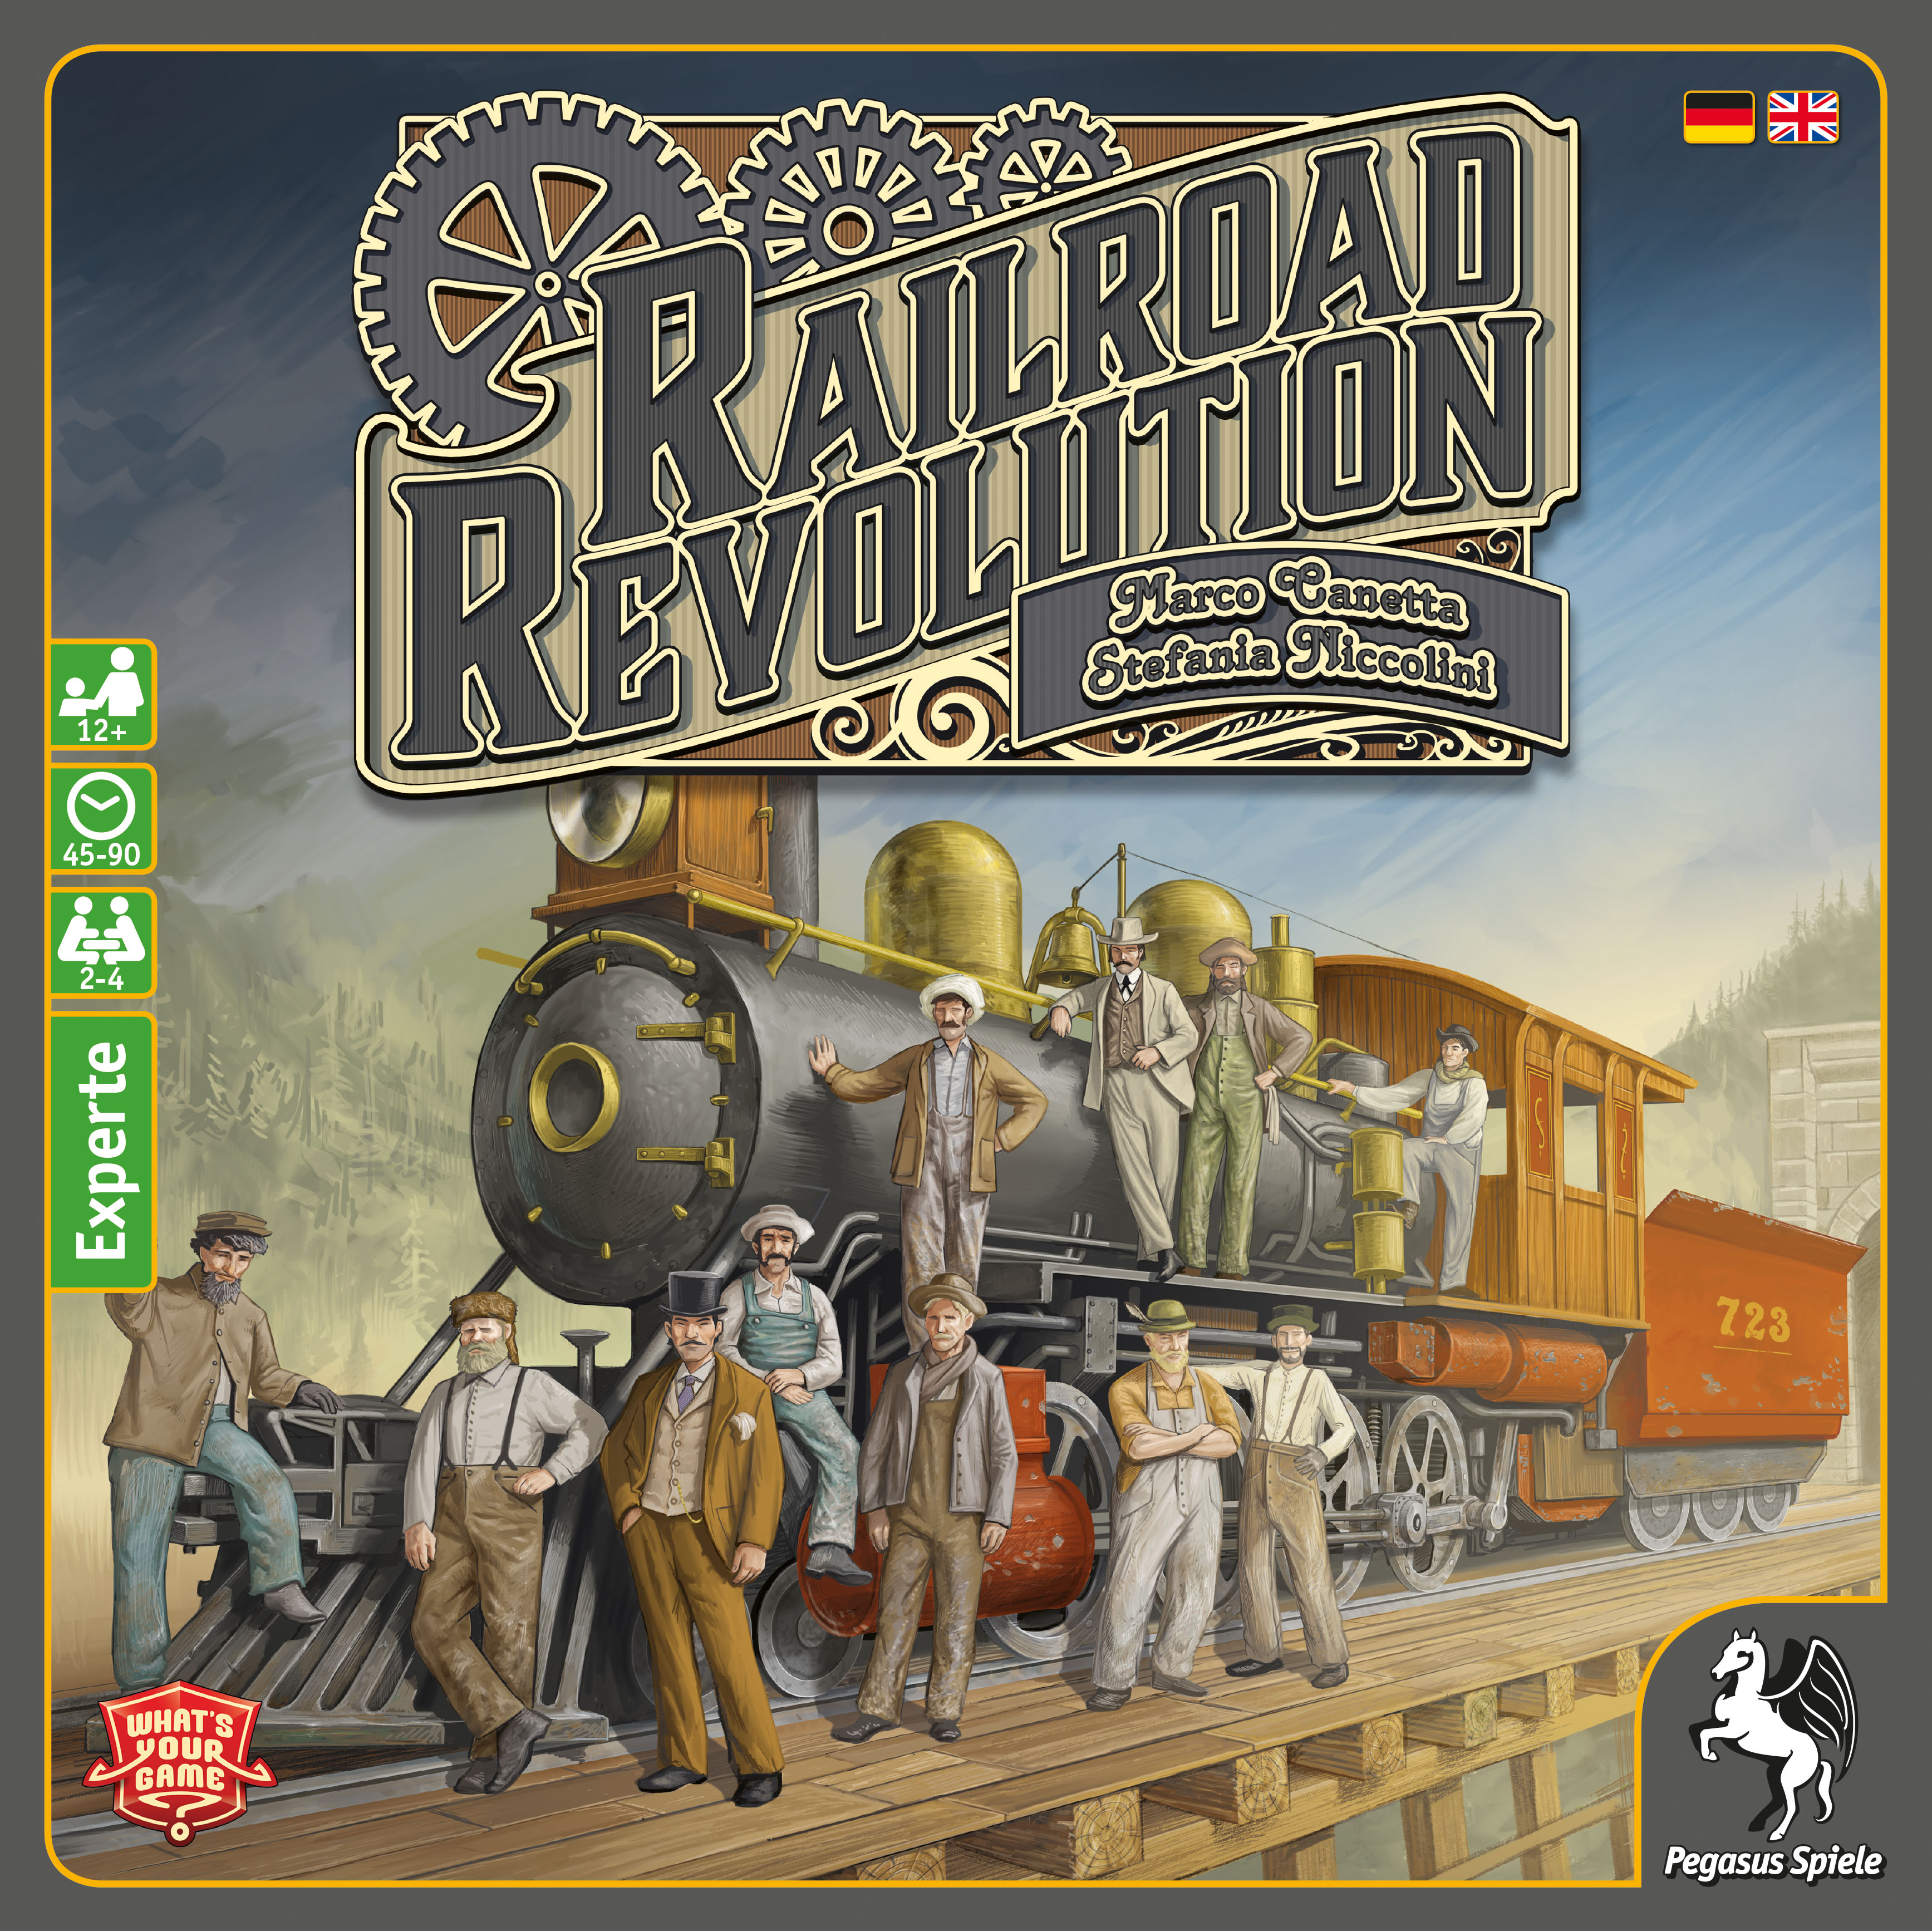 Railroad Revolution erscheint bei Pegasus Spiele im November 2016